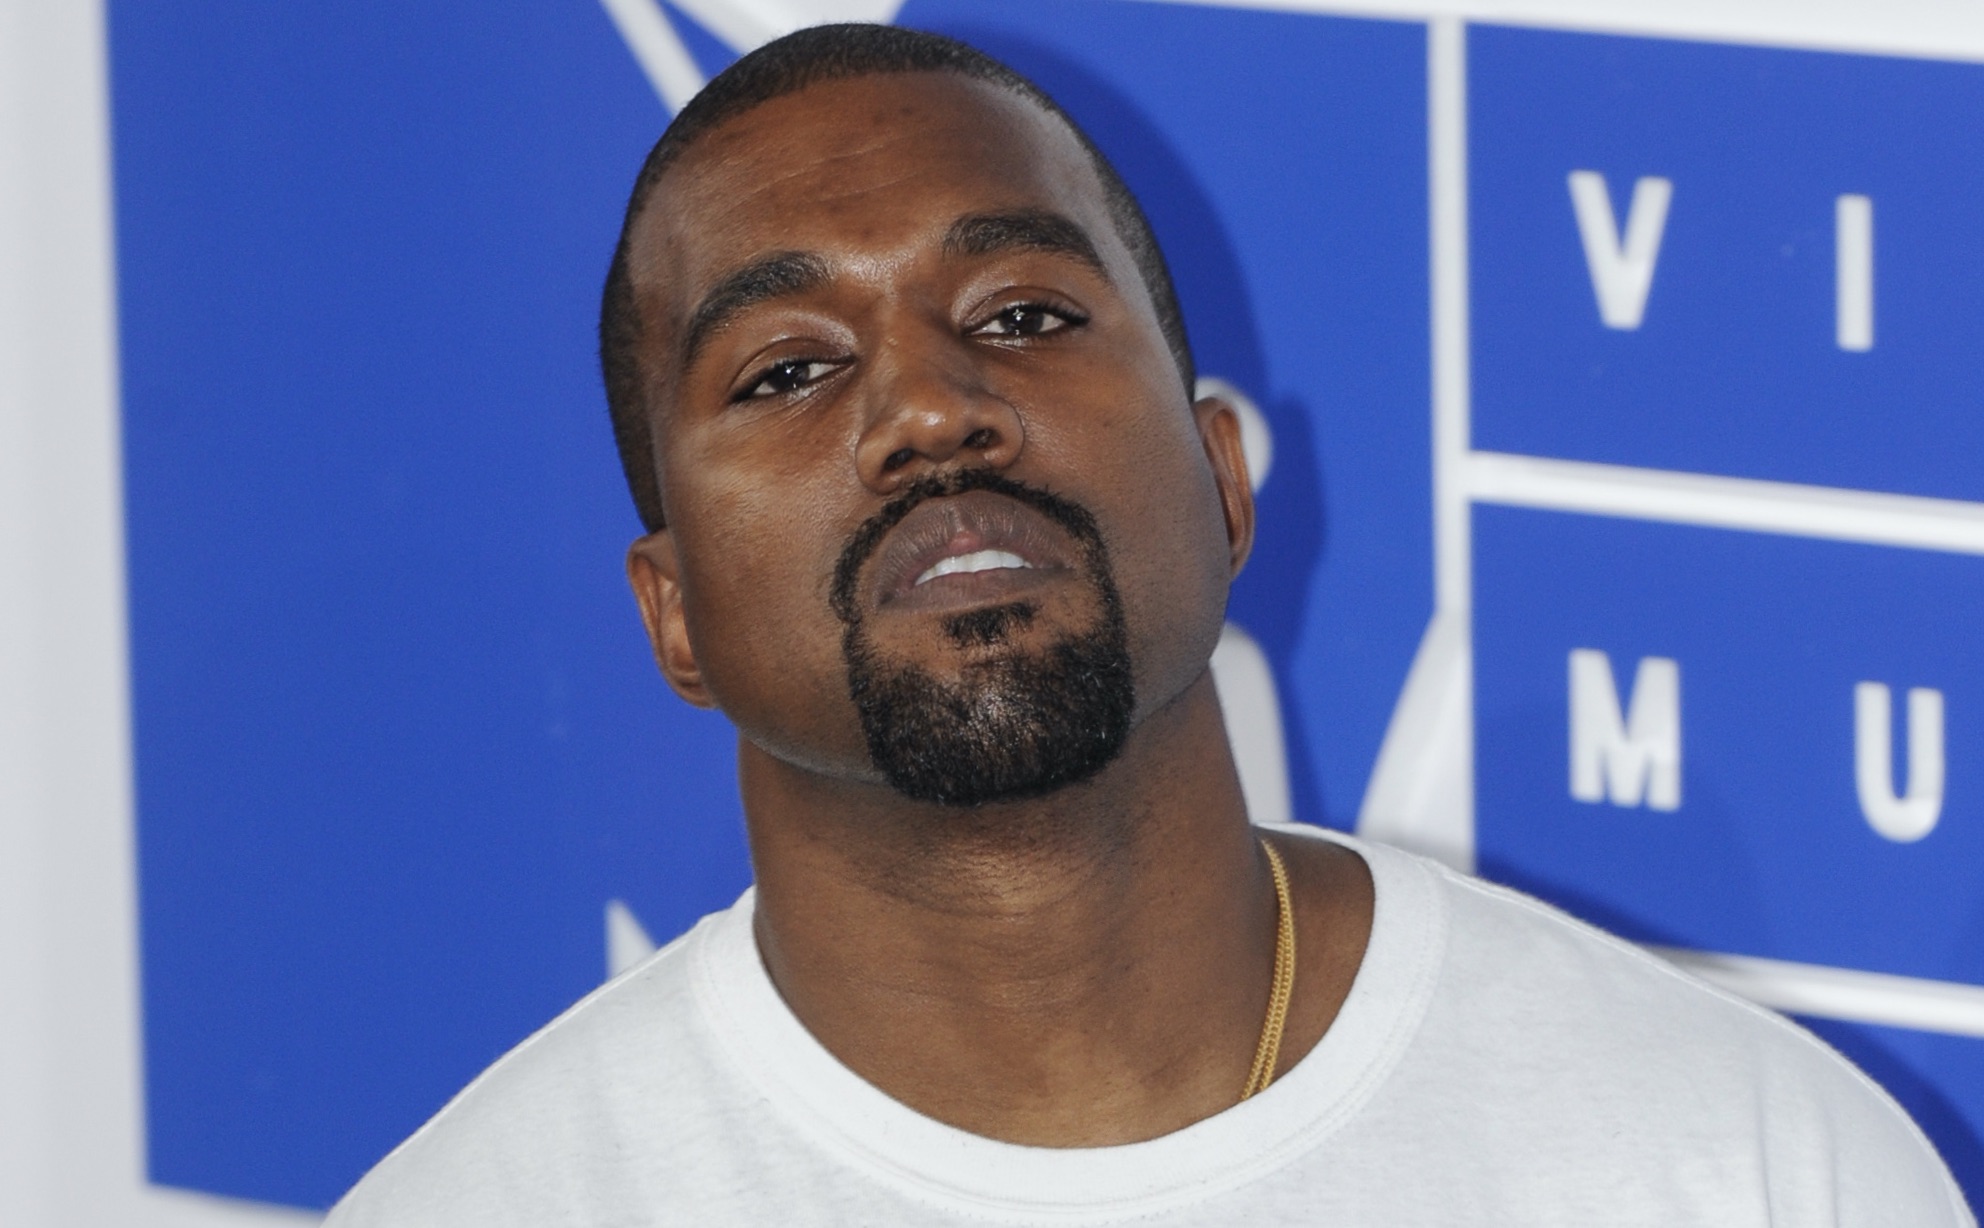 Grand succès de l'album « Jesus Is King » de Kanye West